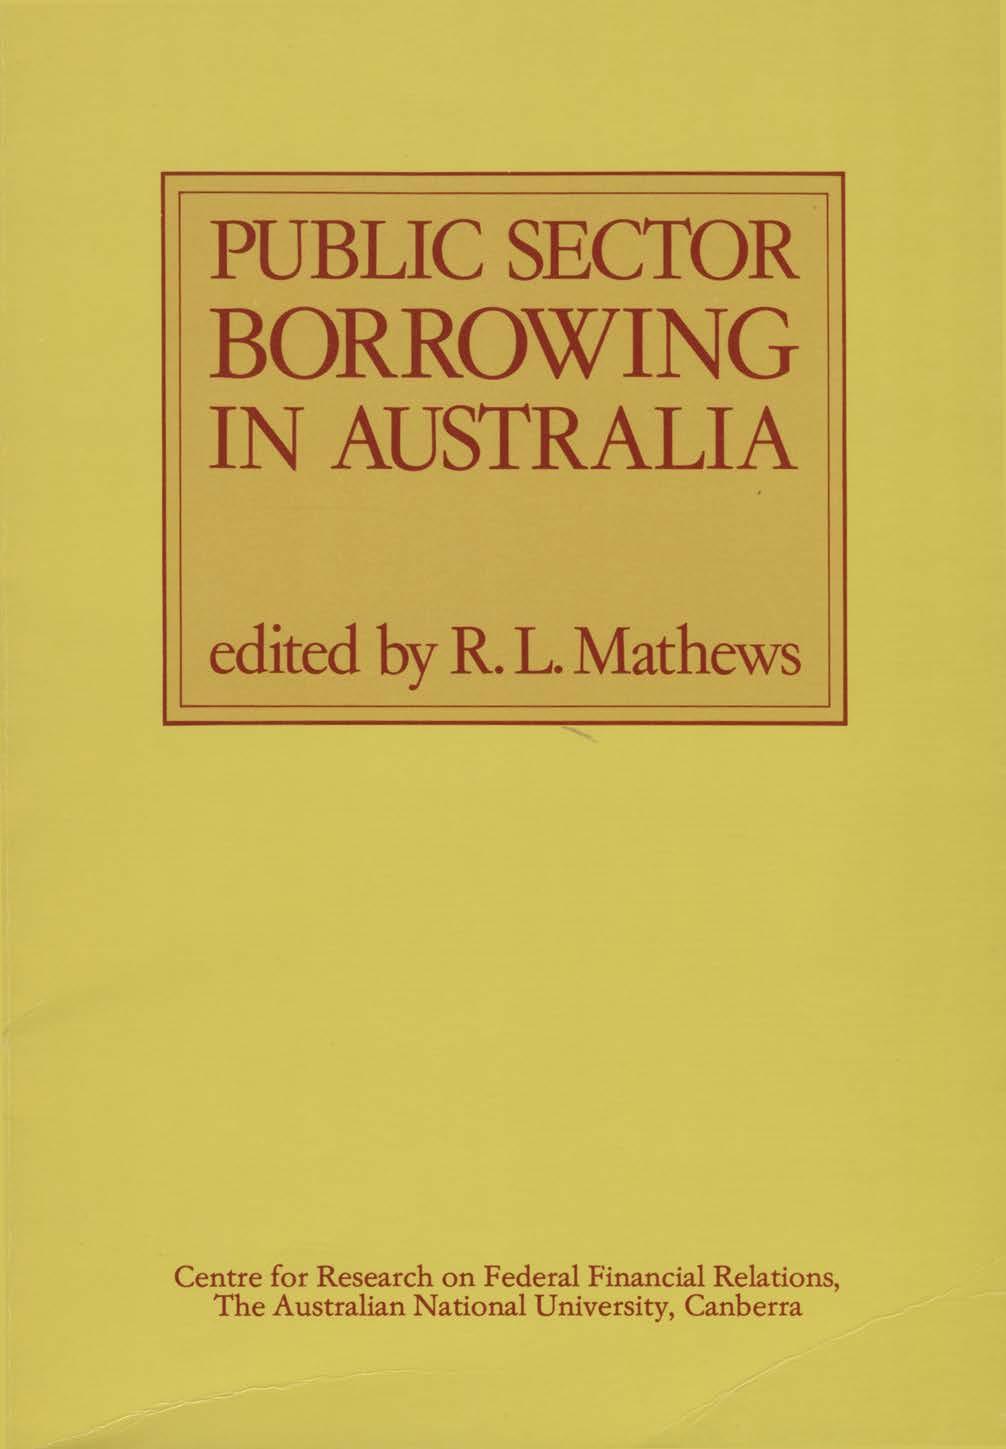 PUBLIC SECTOR BORROWING IN AUSTRALIA edited by R. L.